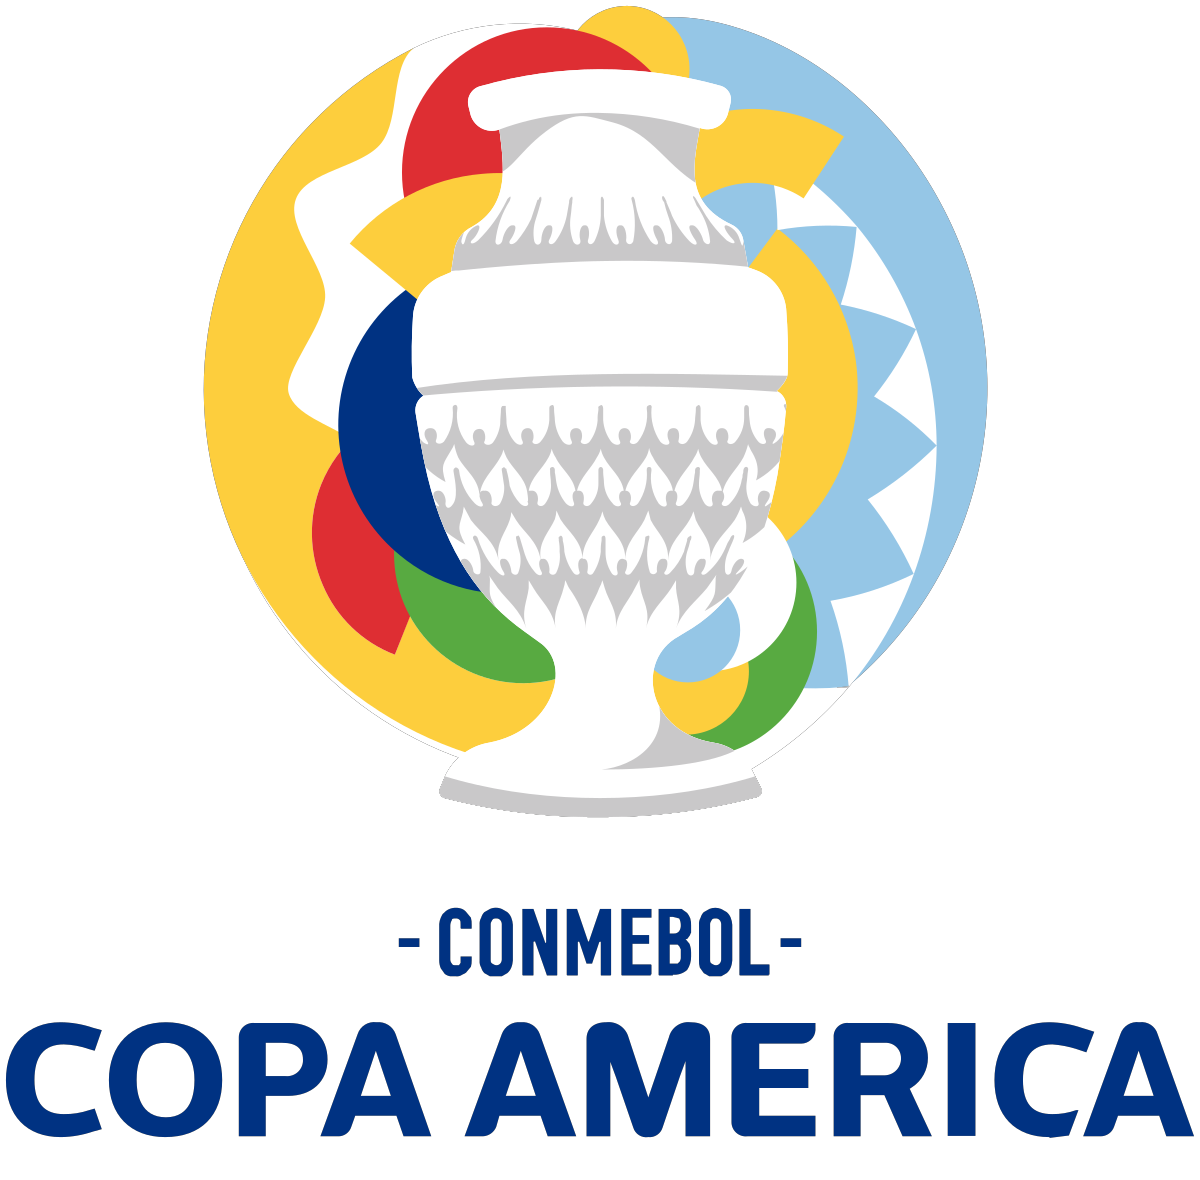 Bet in Copa America